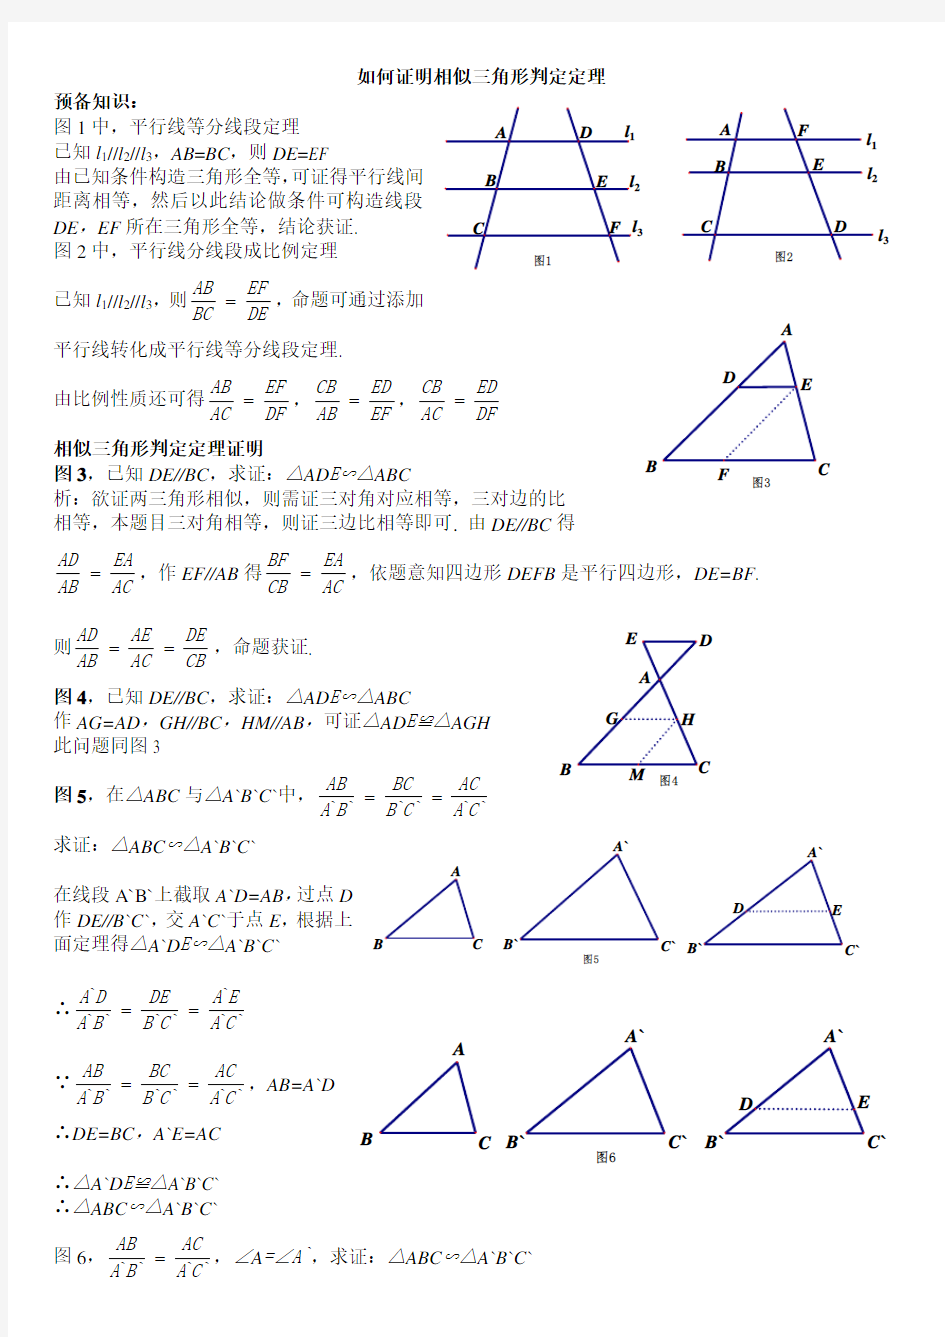 相似三角形判定定理证明